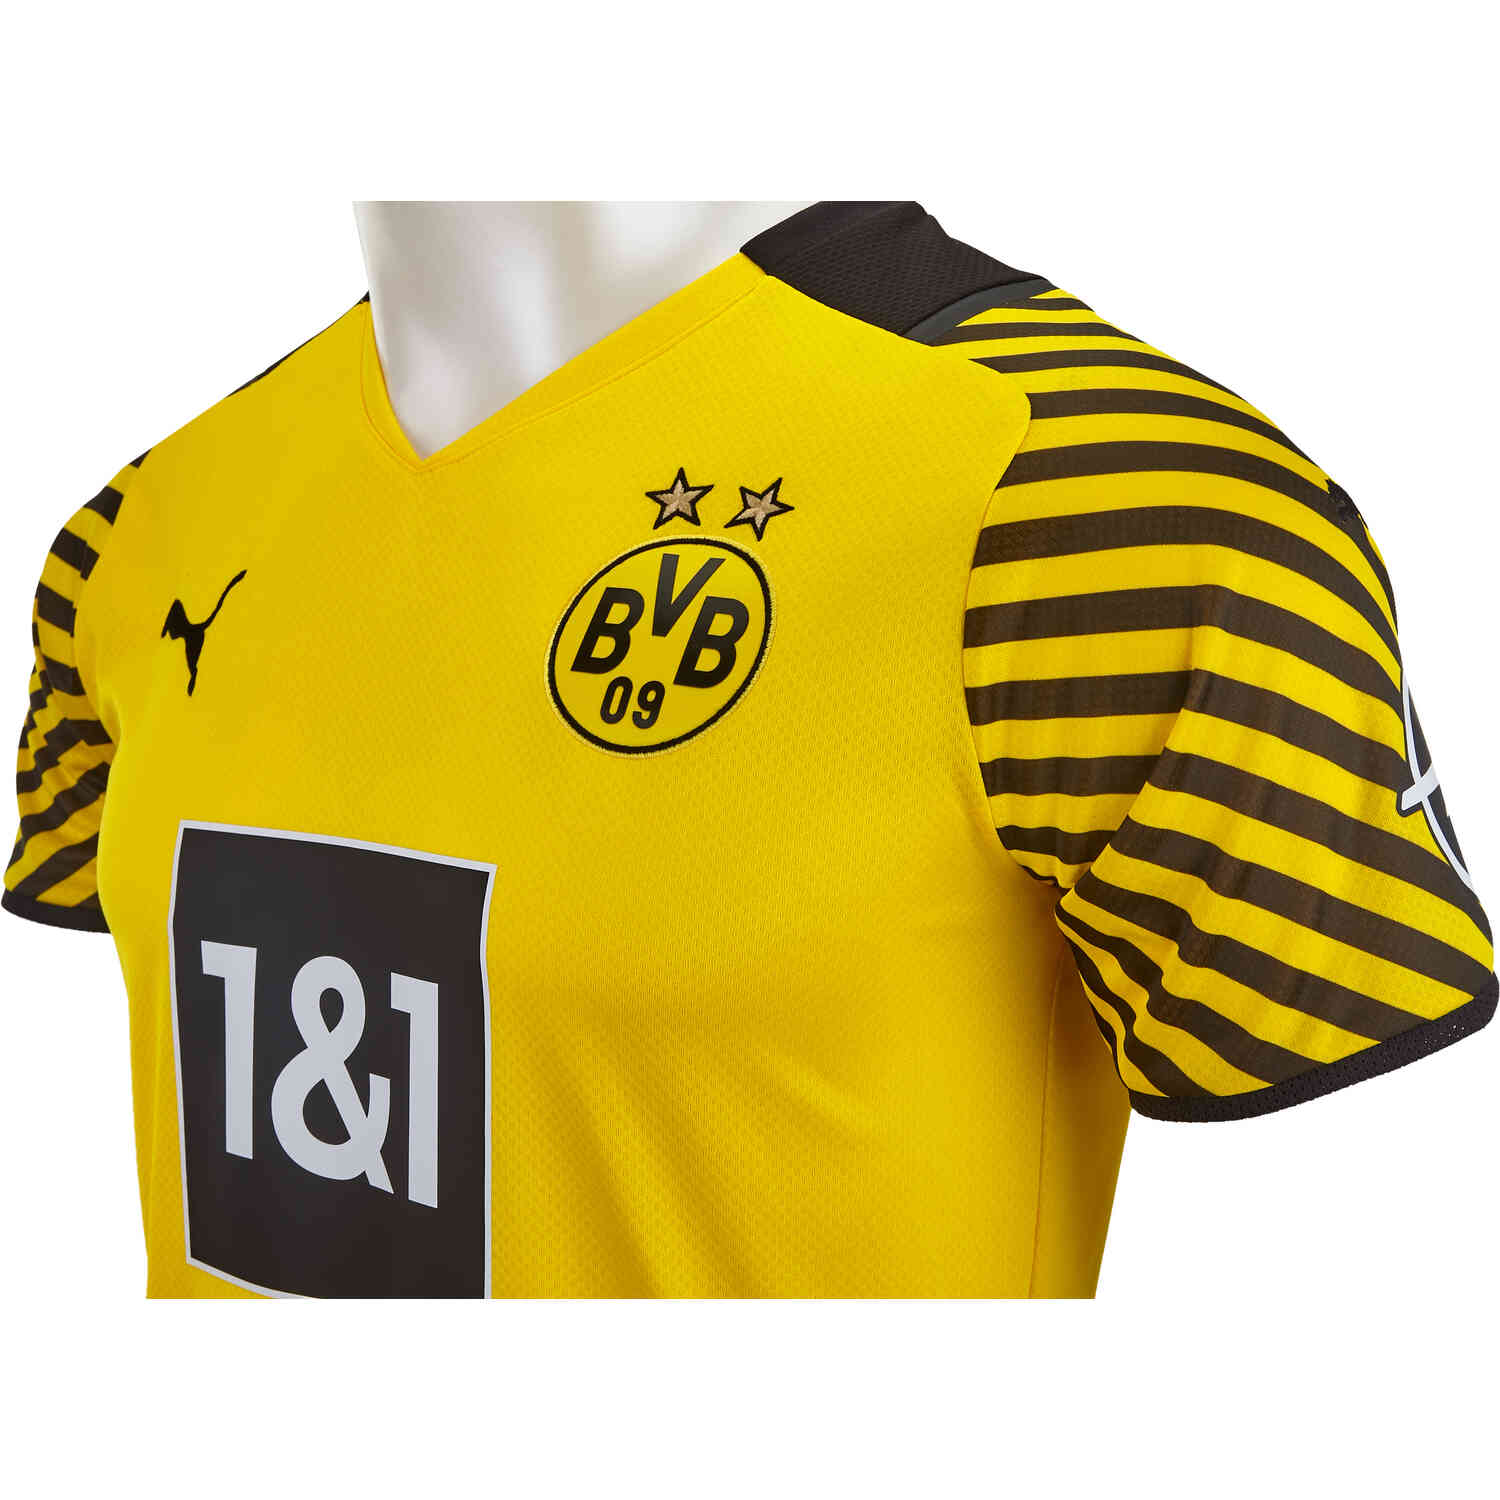 كابرس قديم 2021/22 PUMA Borussia Dortmund Home Jersey - SoccerPro كابرس قديم